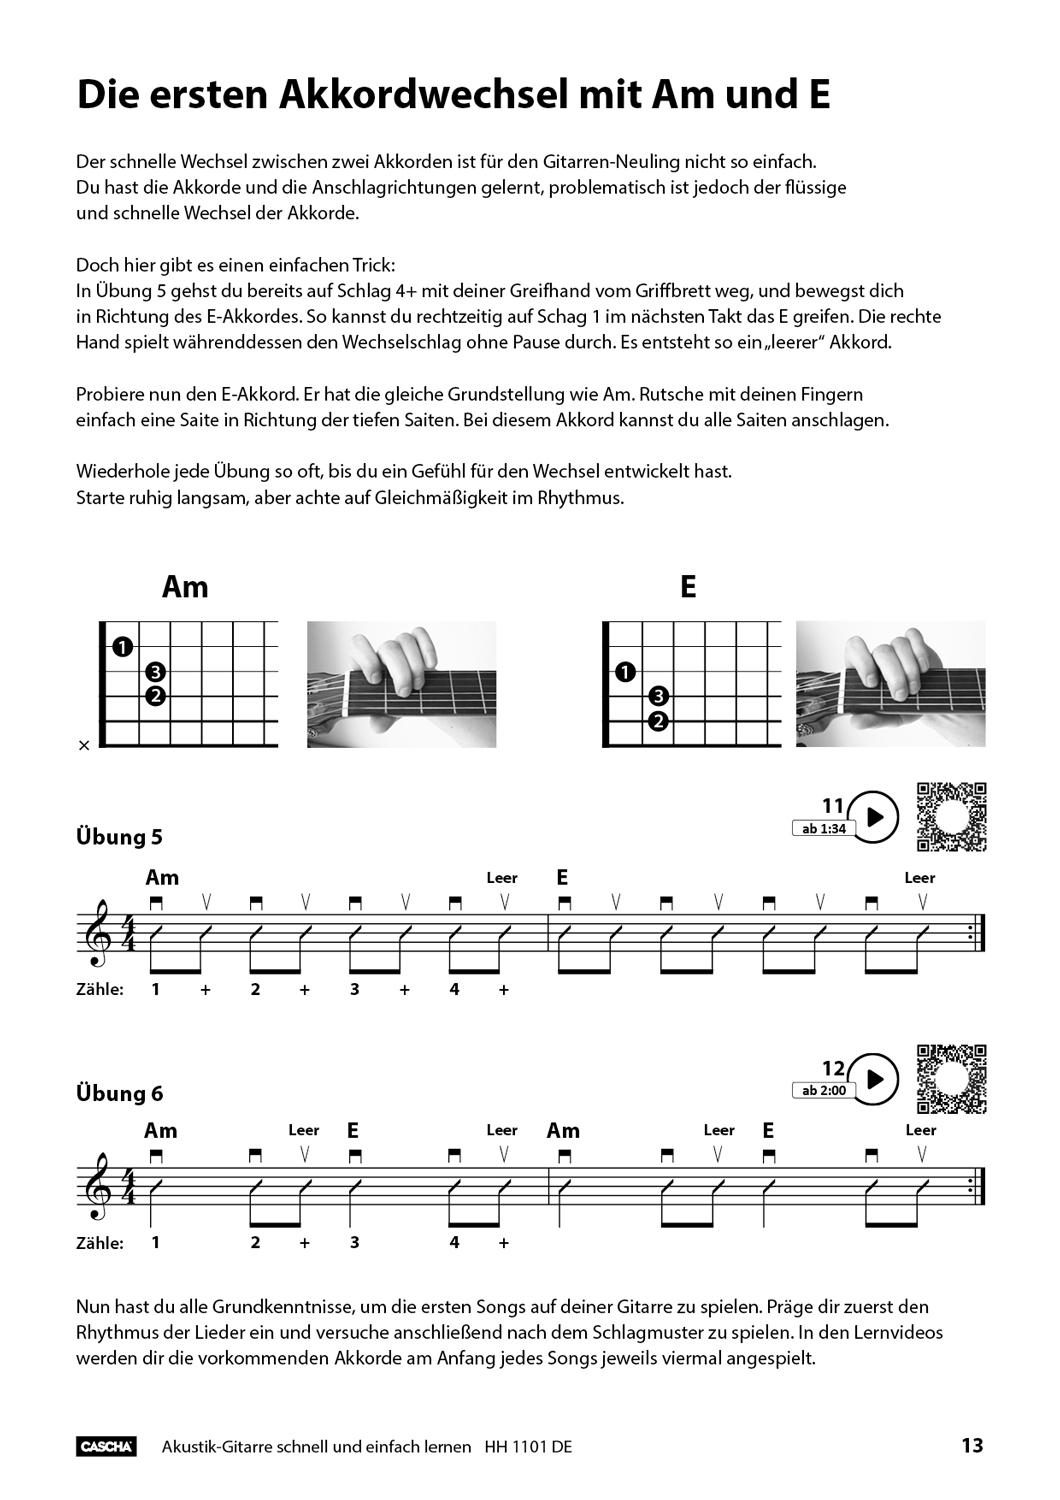 Akustik-Gitarre - Schnell und einfach lernen Seiten 6